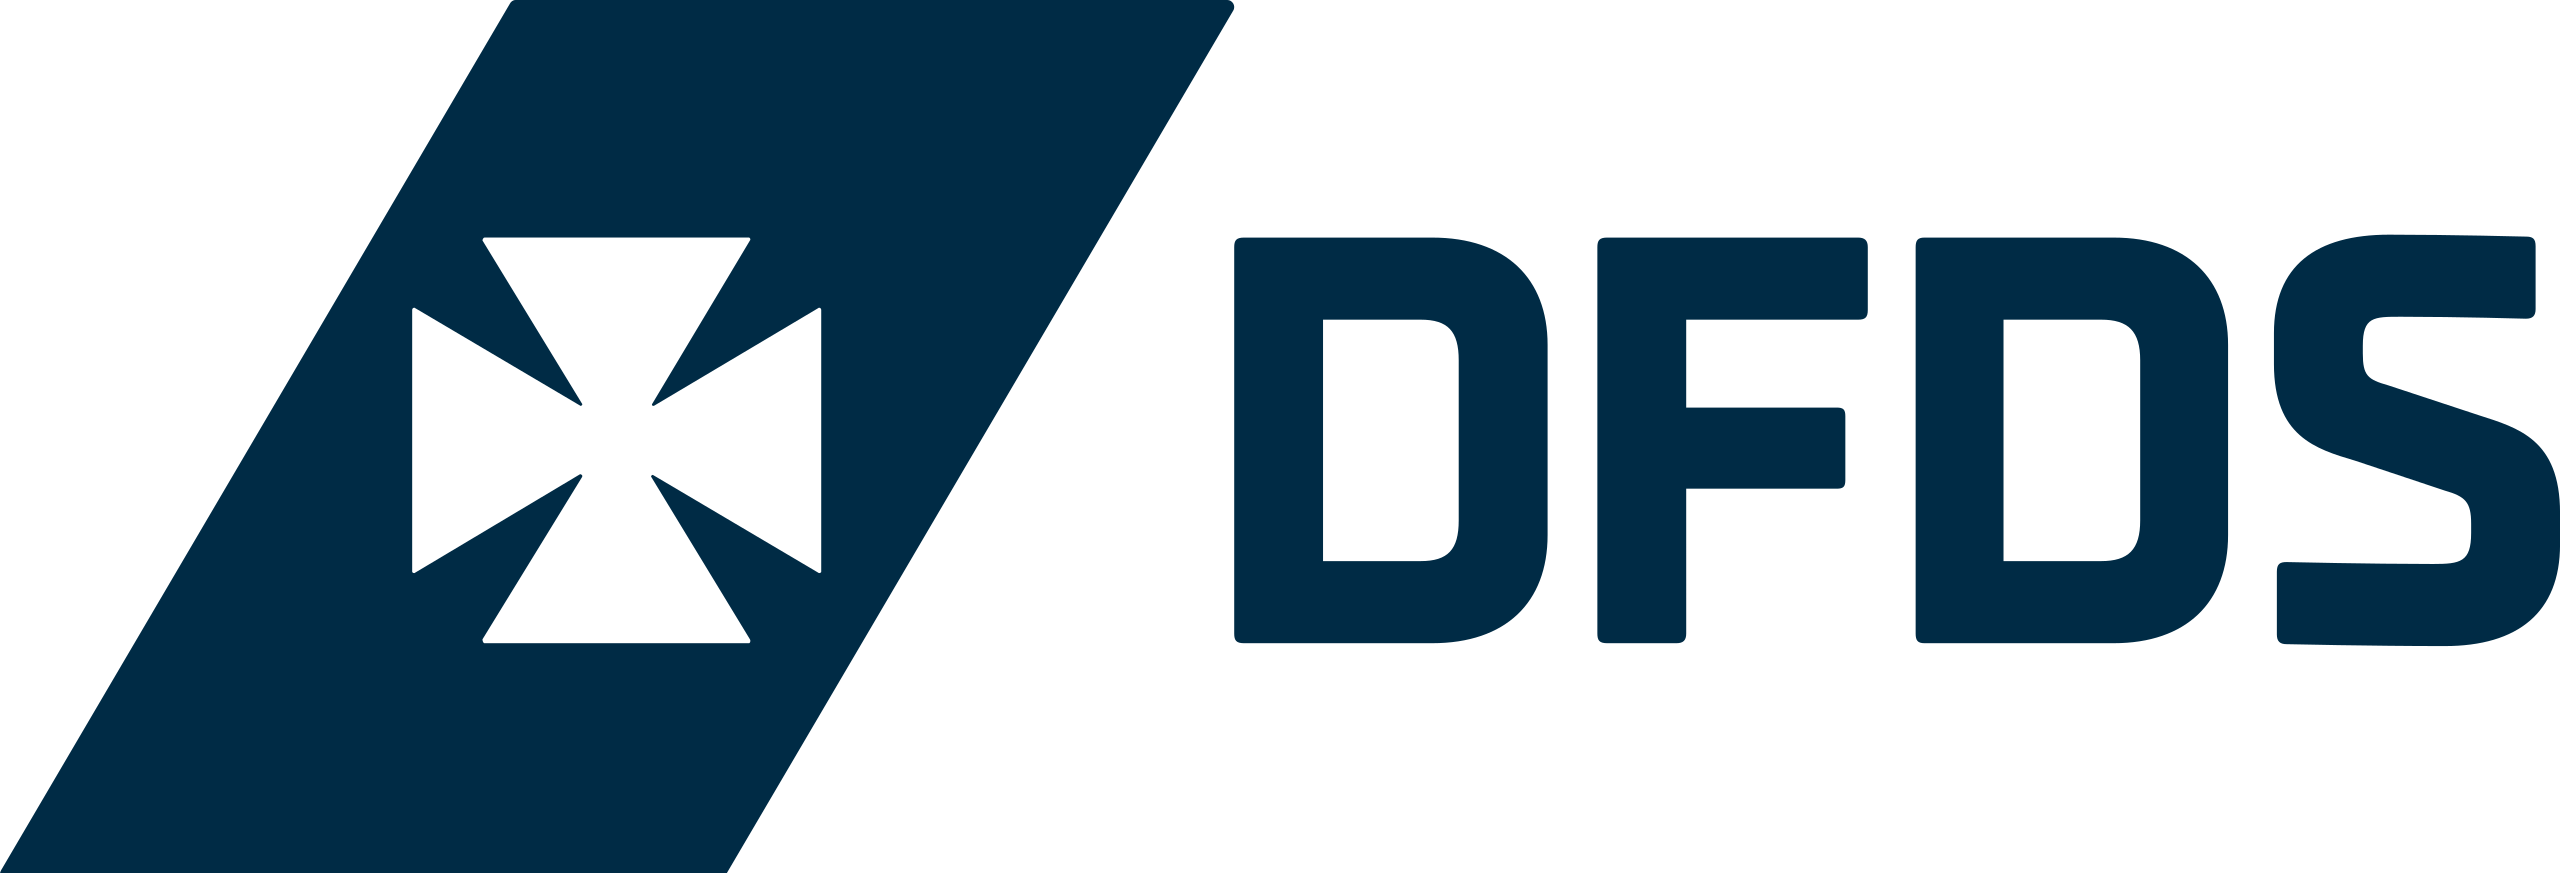 Home | Smartferry | DFDS logo